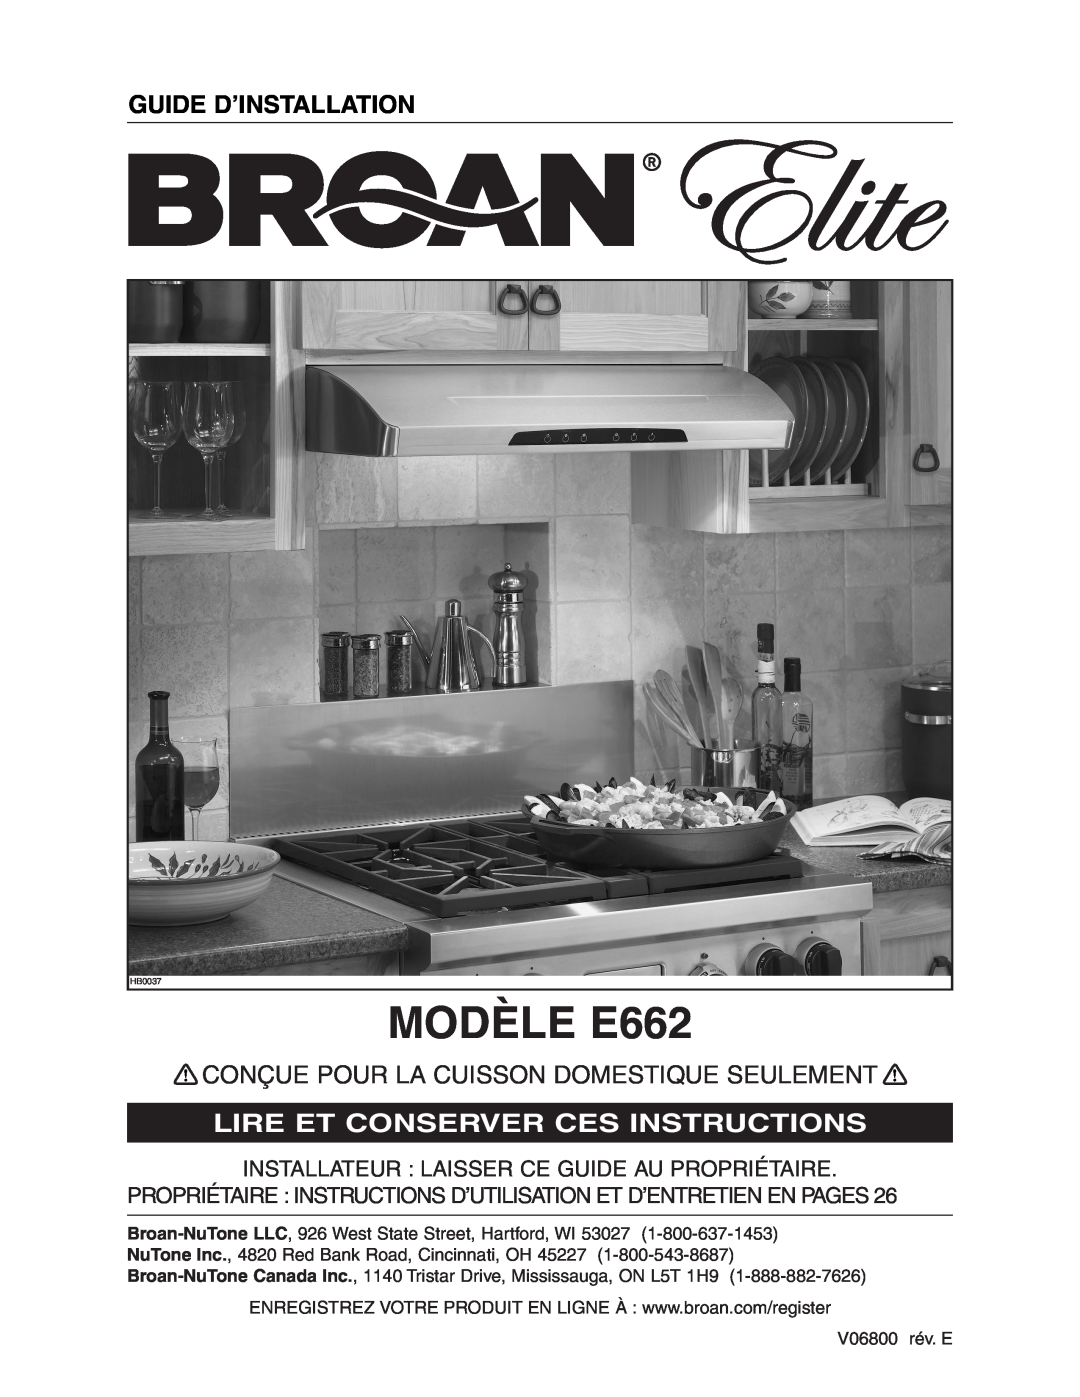 Broan Model E662 installation instructions MODÈLE E662, Guide D’Installation, Conçue Pour La Cuisson Domestique Seulement 